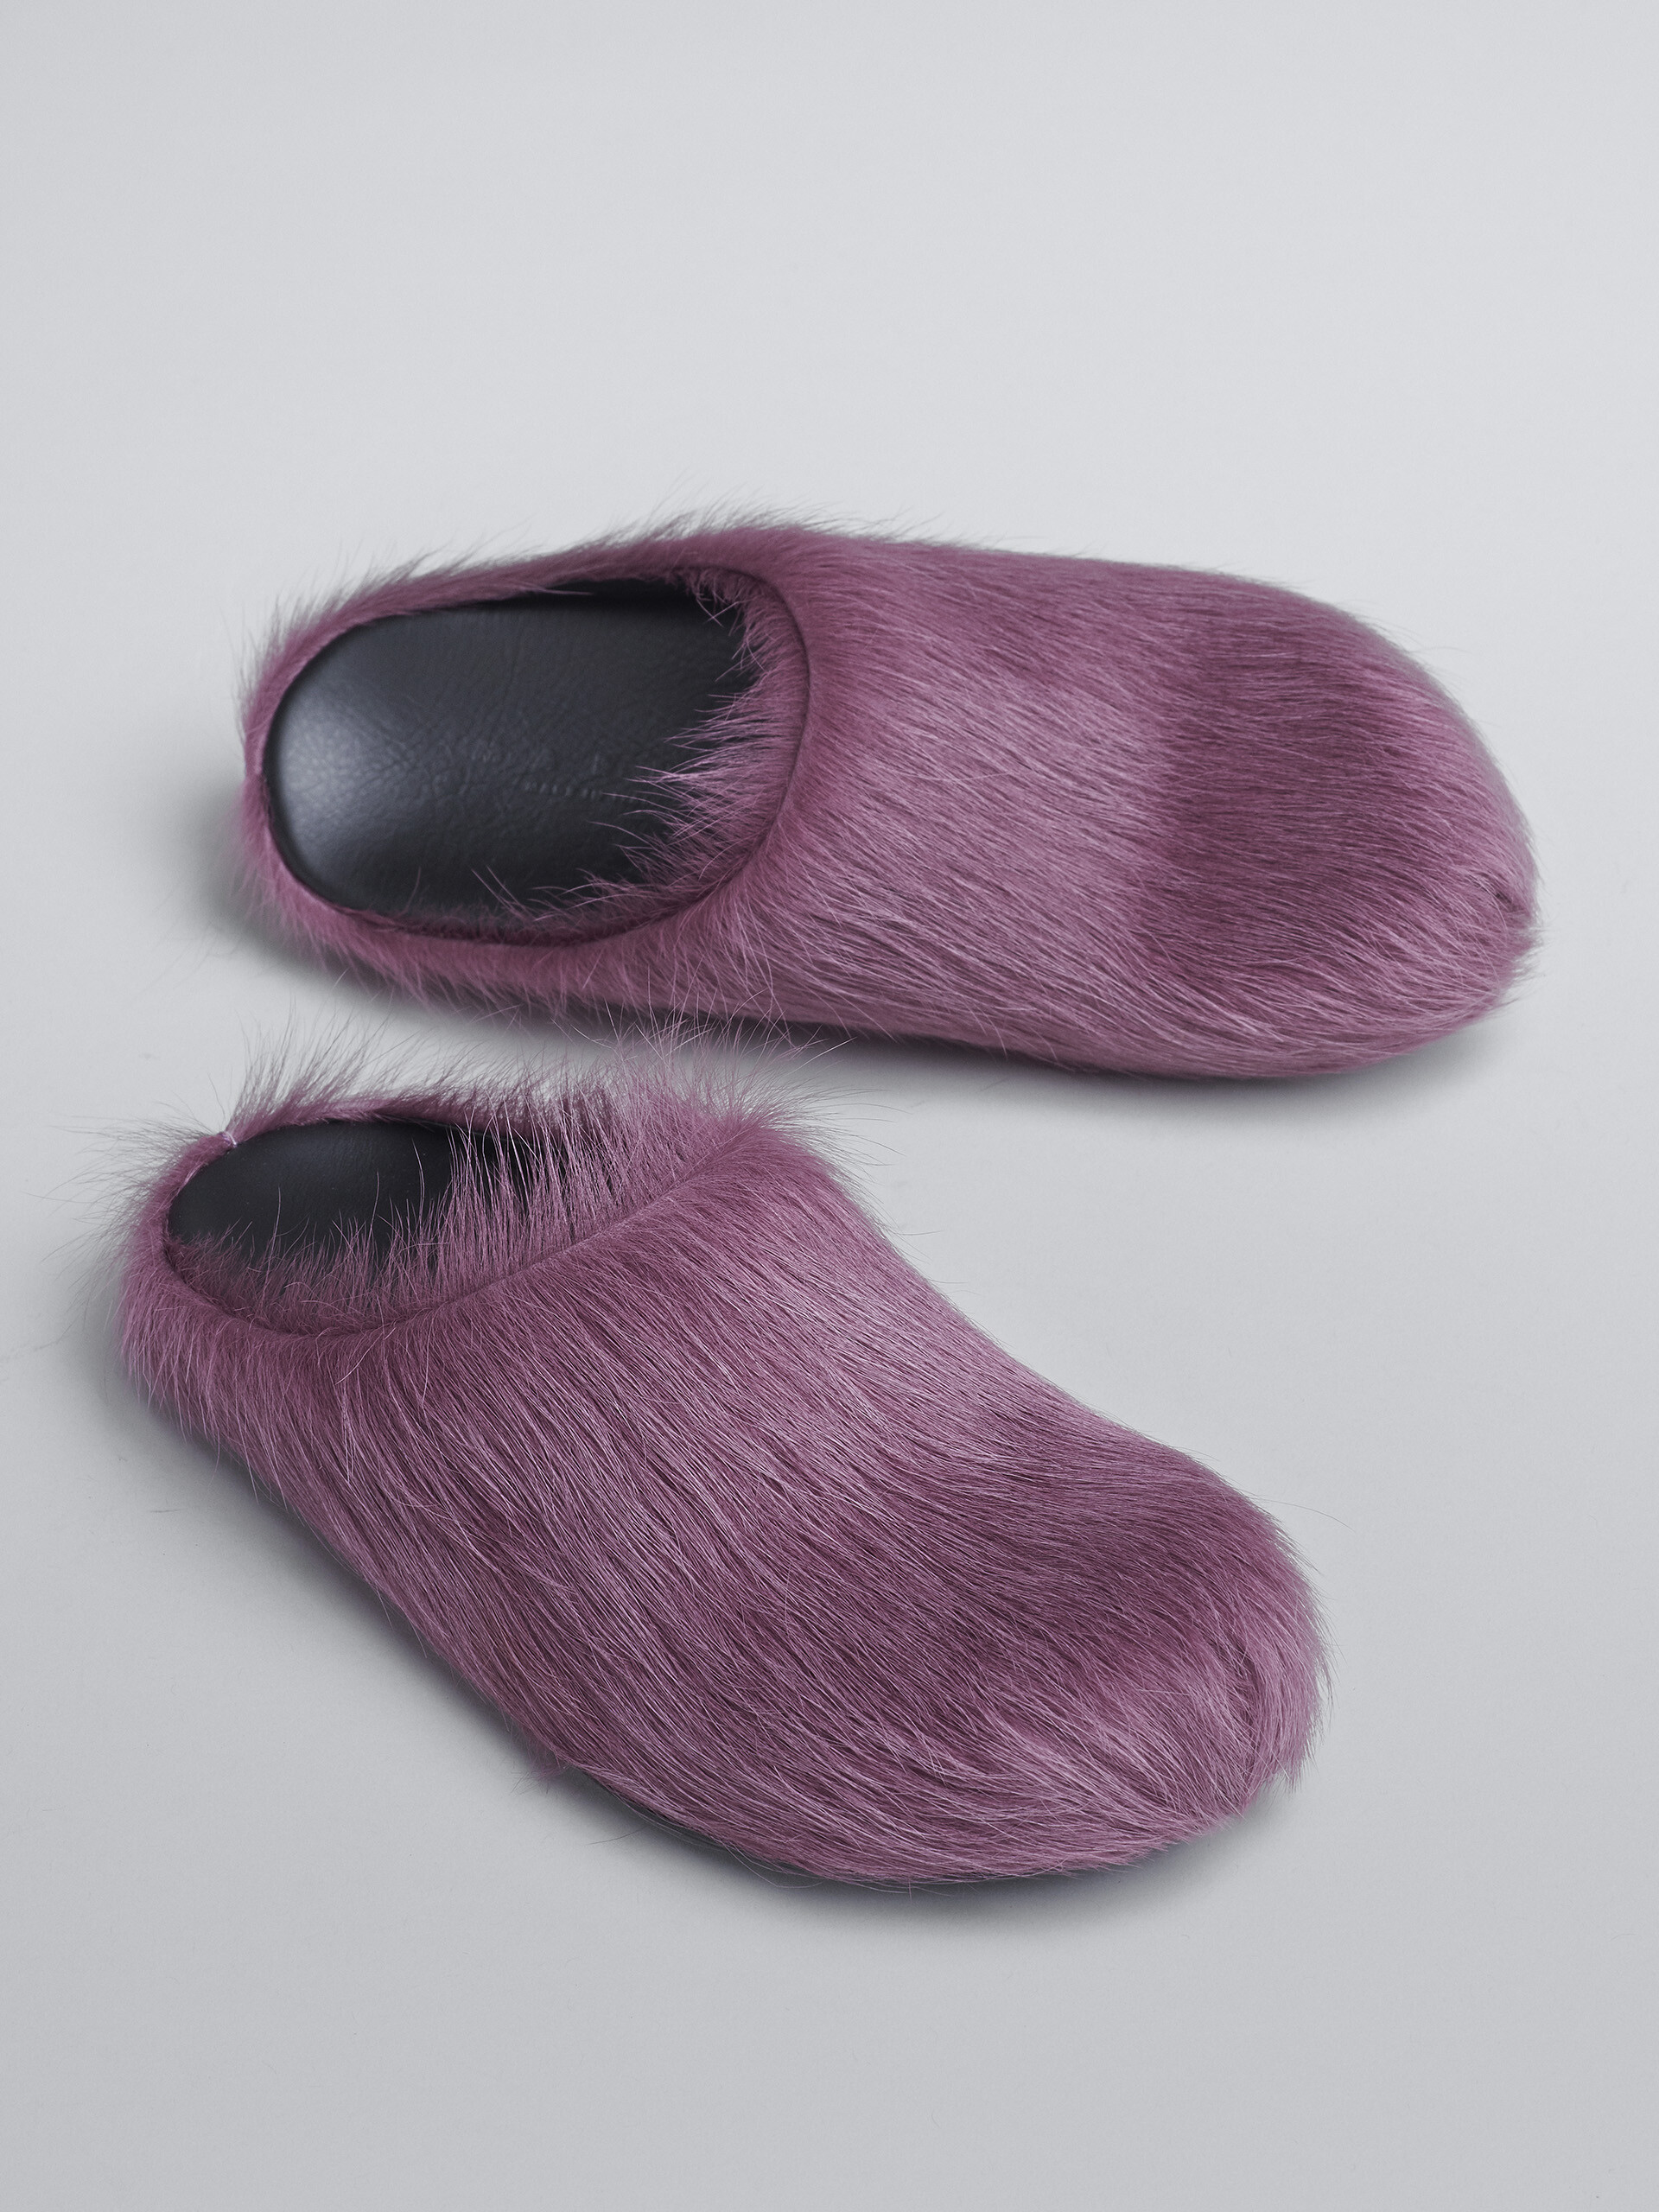 Violette Fußbett-Sandale aus Kalbsfell - Holzschuhe - Image 5